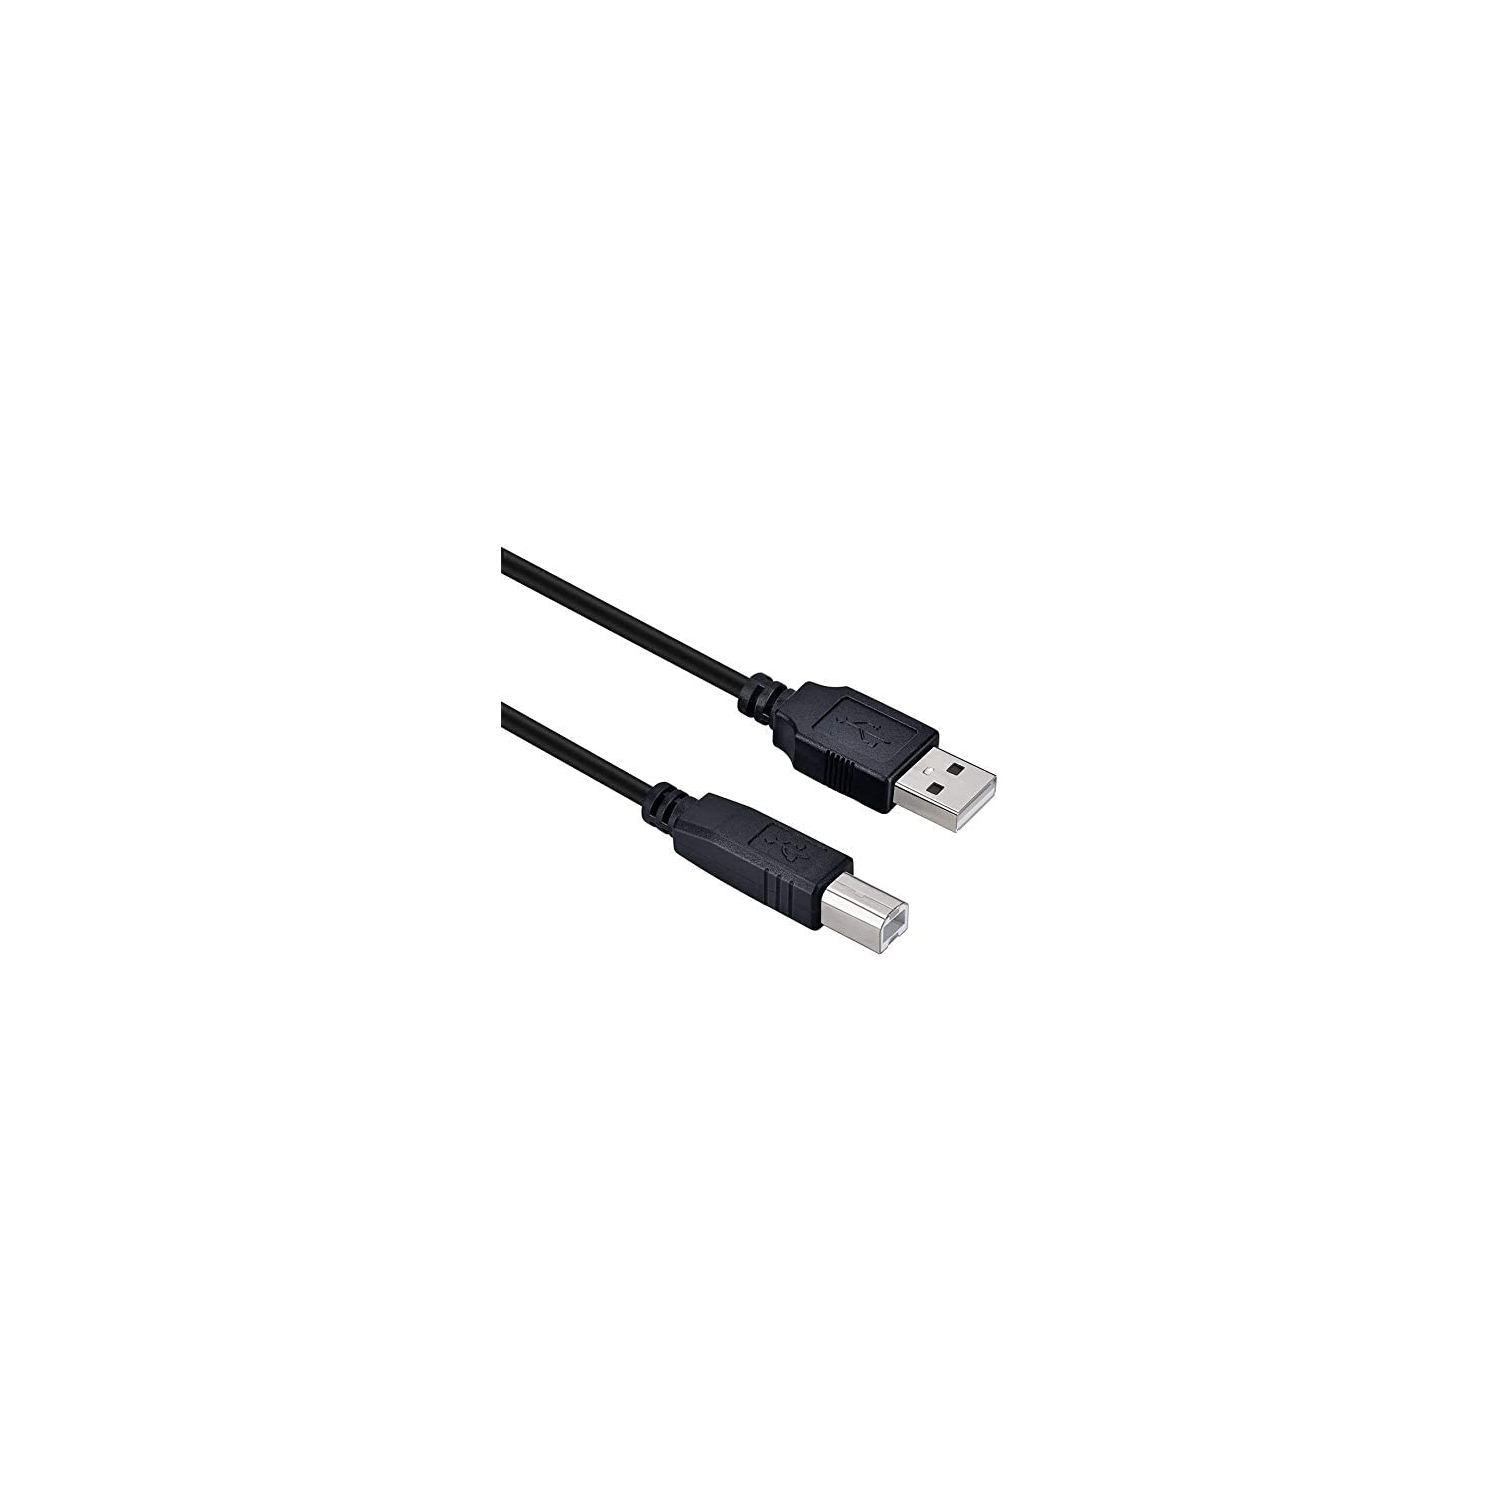 Cable de impresora USB compatible con HP Laserjet Pro M404dn M404dw M454dw  M477fdw M479fdn M102w M251nw M227FDN, Envy 4500 5640 7155 7640 7855, HP